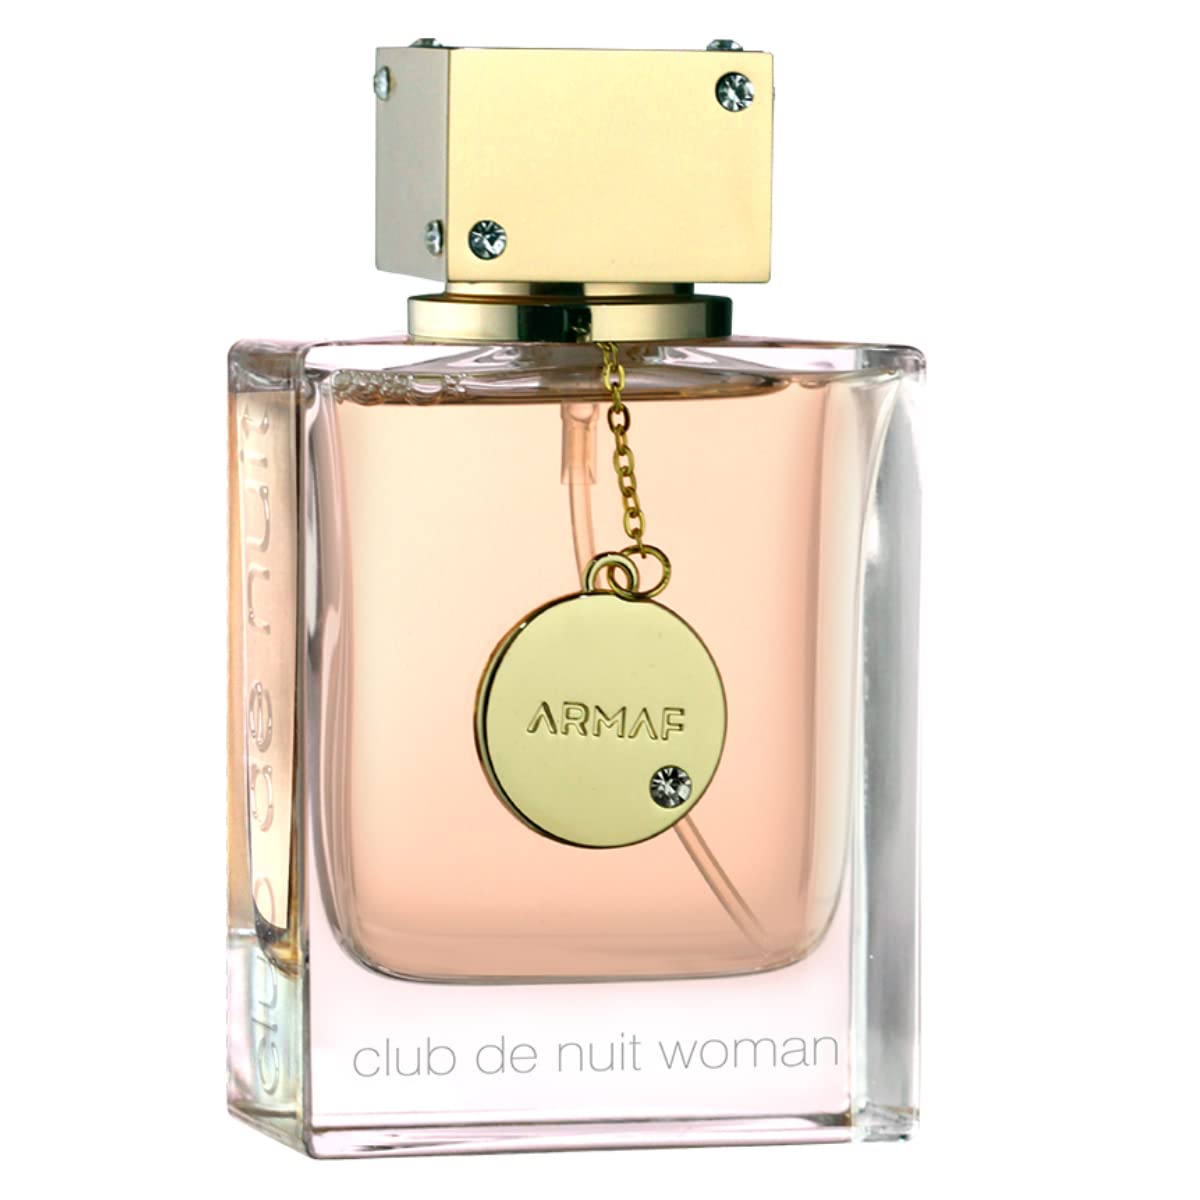 Club de Nuit by Armaf for Women - Eau De Parfum - 105ml